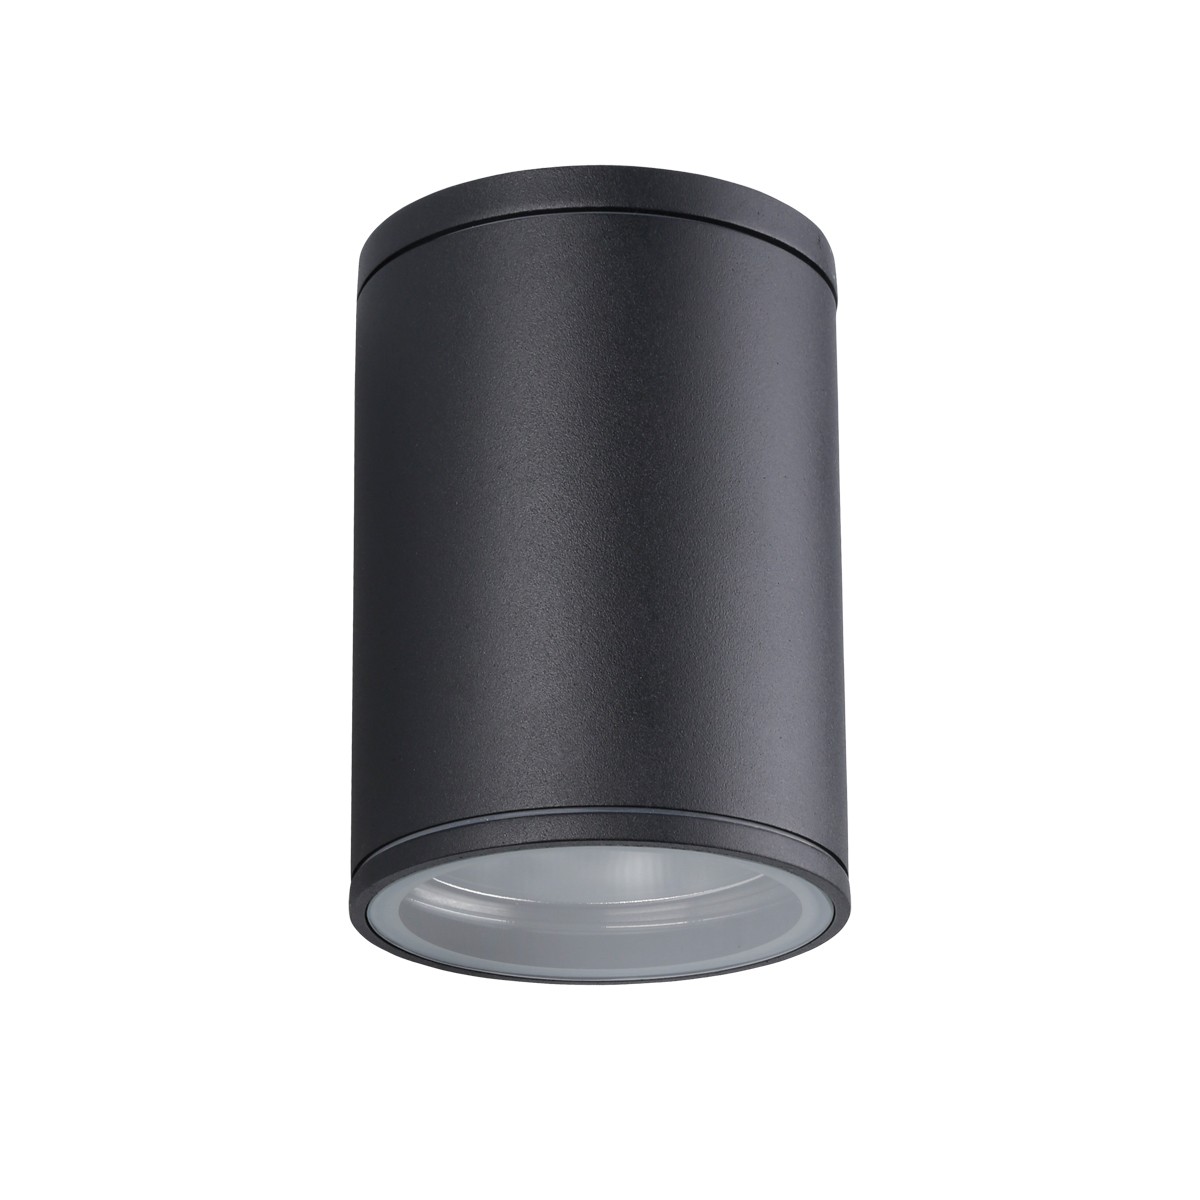 Φωτιστικό Αλουμινίου Οροφής IP54 E27 D108mm Μαύρο Χρώμα        VK/01060/B